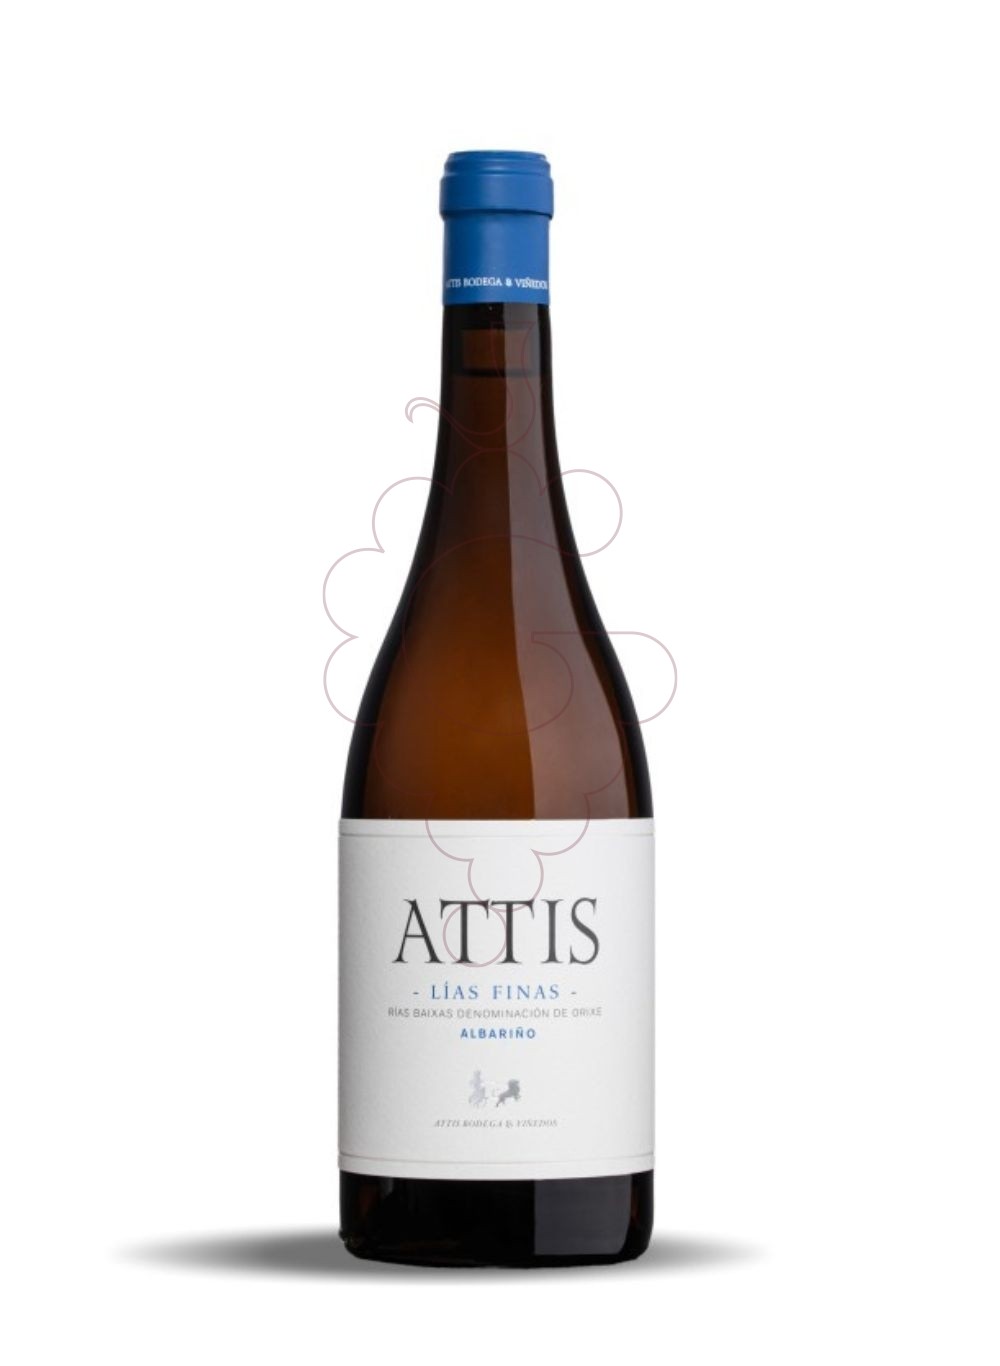 Photo Attis albari?o lias finas 75 c white wine